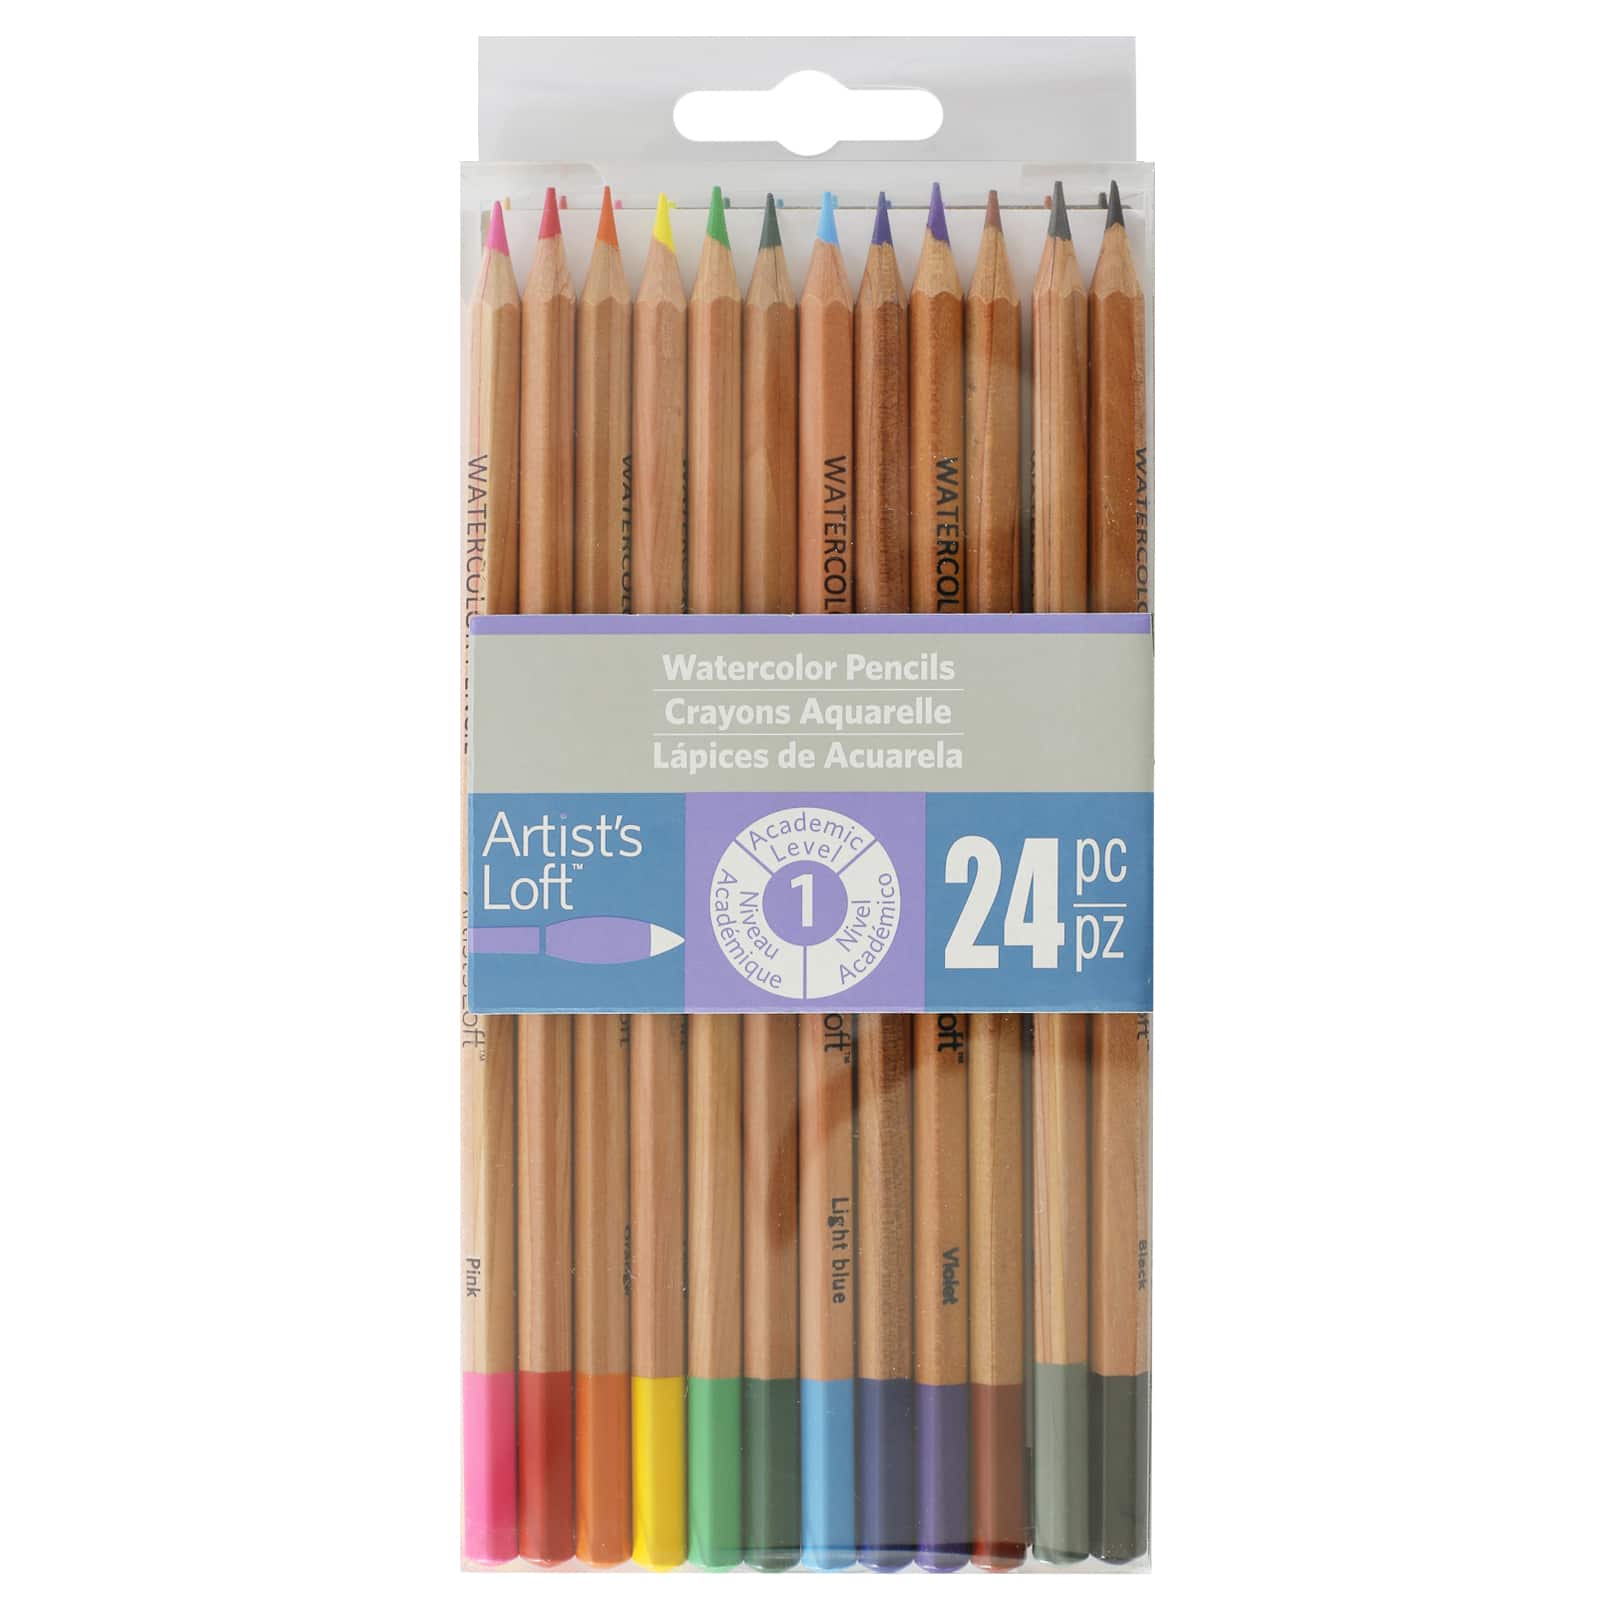 Artist's Loft Colored Pencils, 24 Count